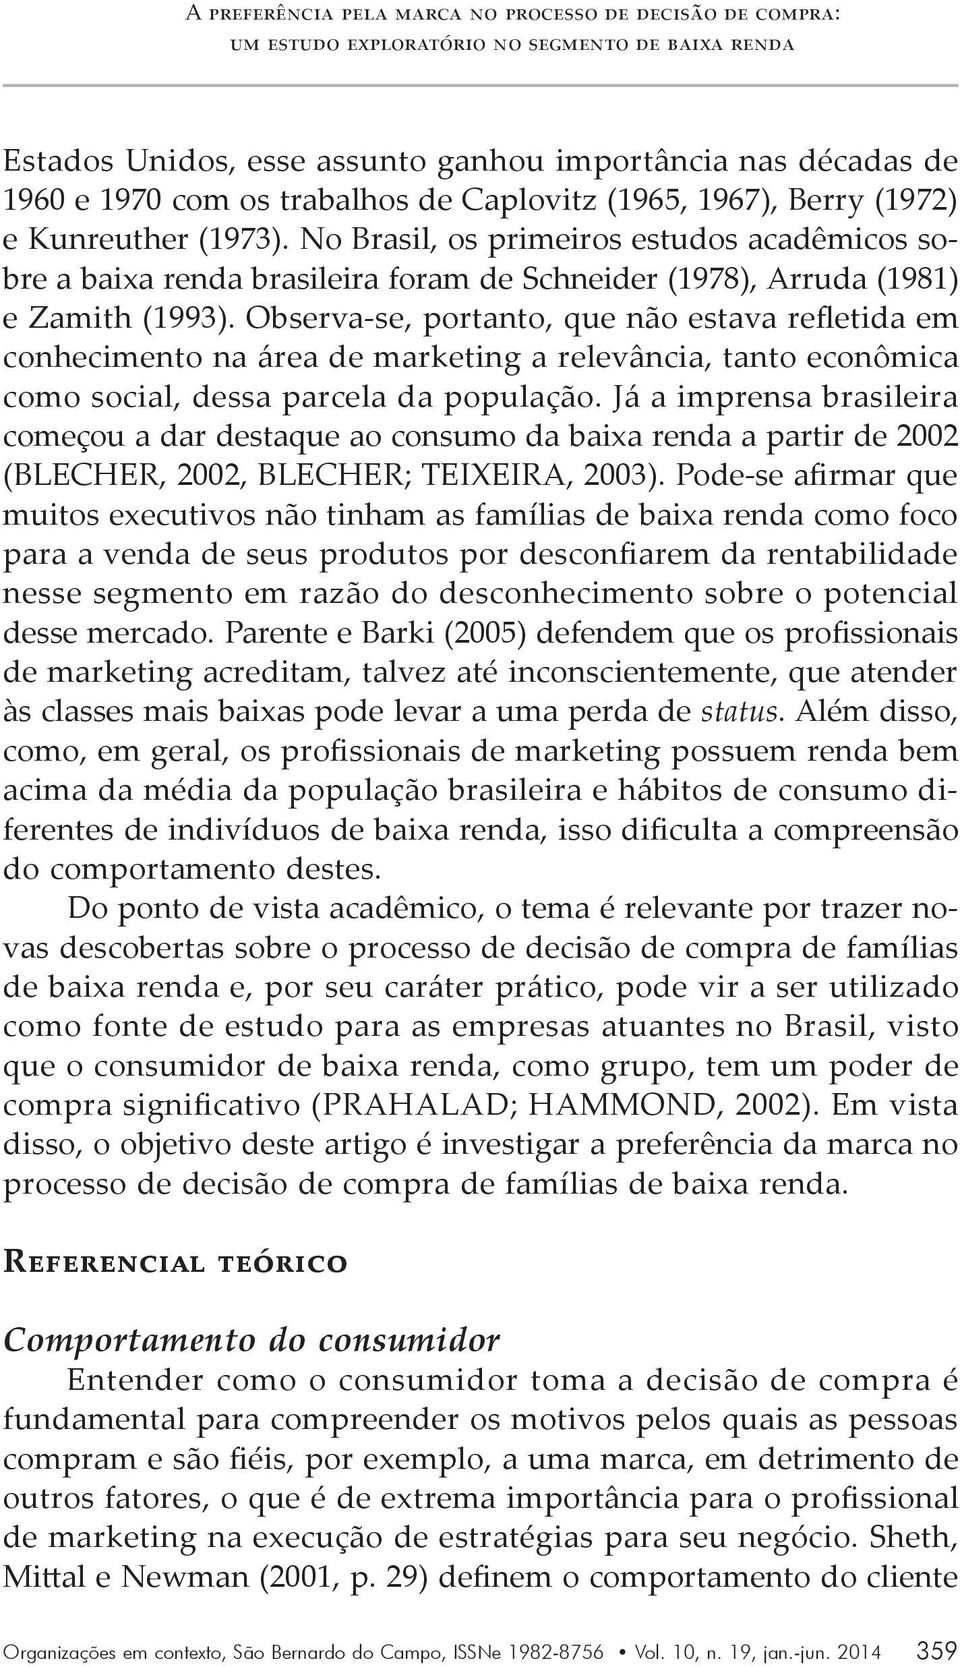 No Brasil, os primeiros estudos acadêmicos sobre a baixa renda brasileira foram de Schneider (1978), Arruda (1981) e Zamith (1993).